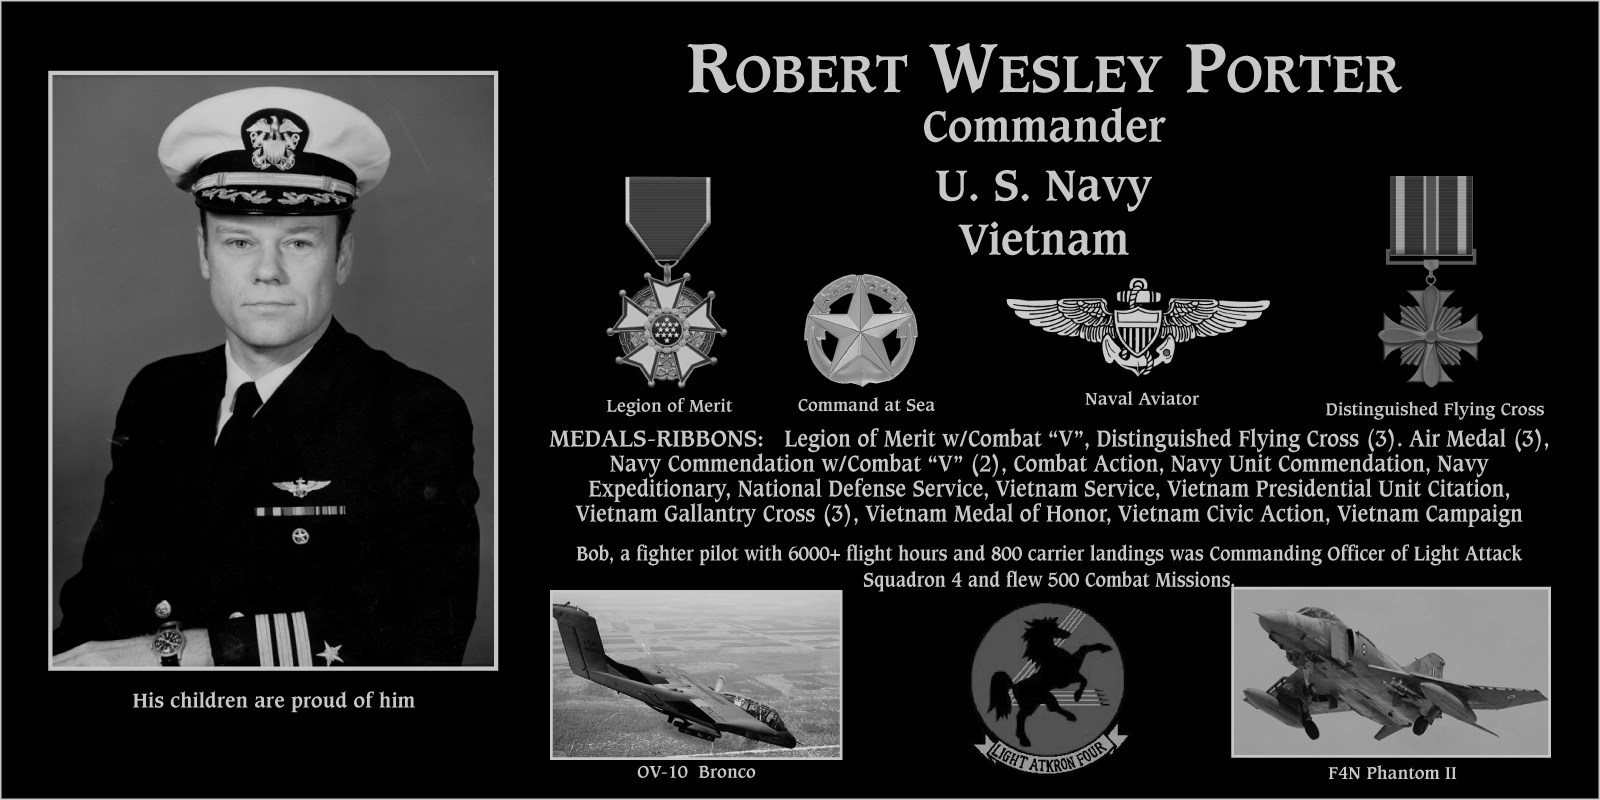 Robert Wesley “Bob” Porter